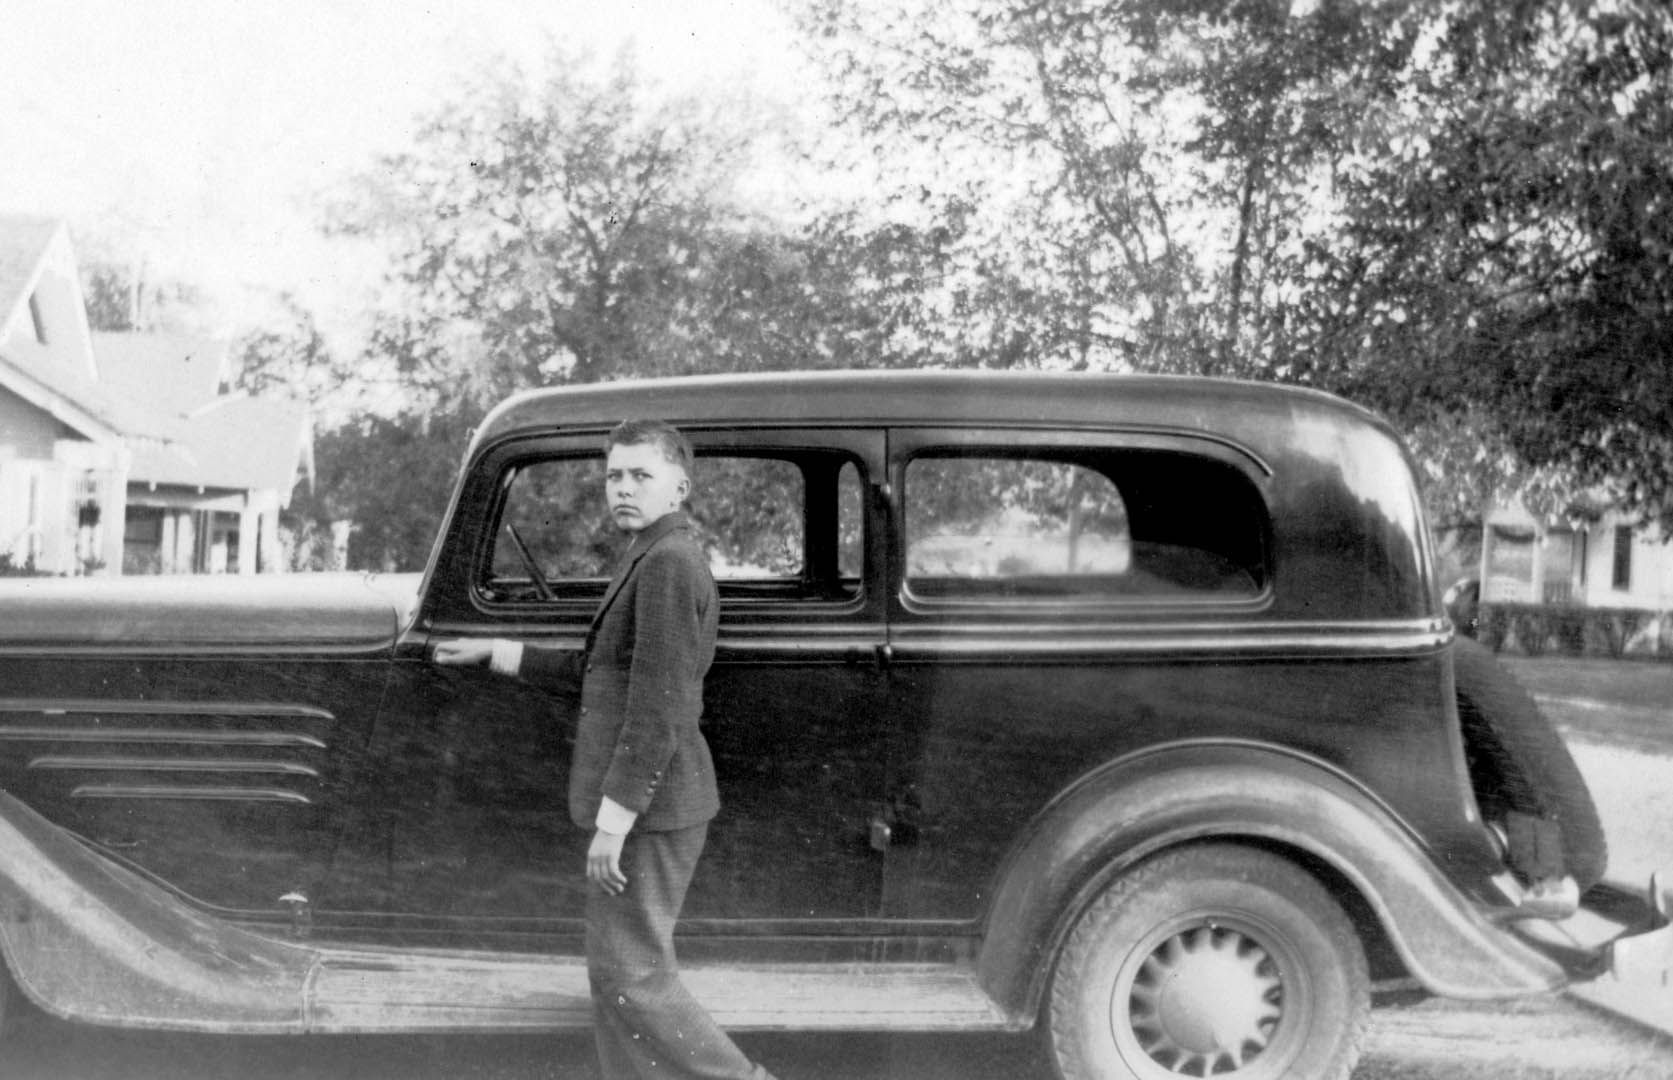 Carroll Shelby with car